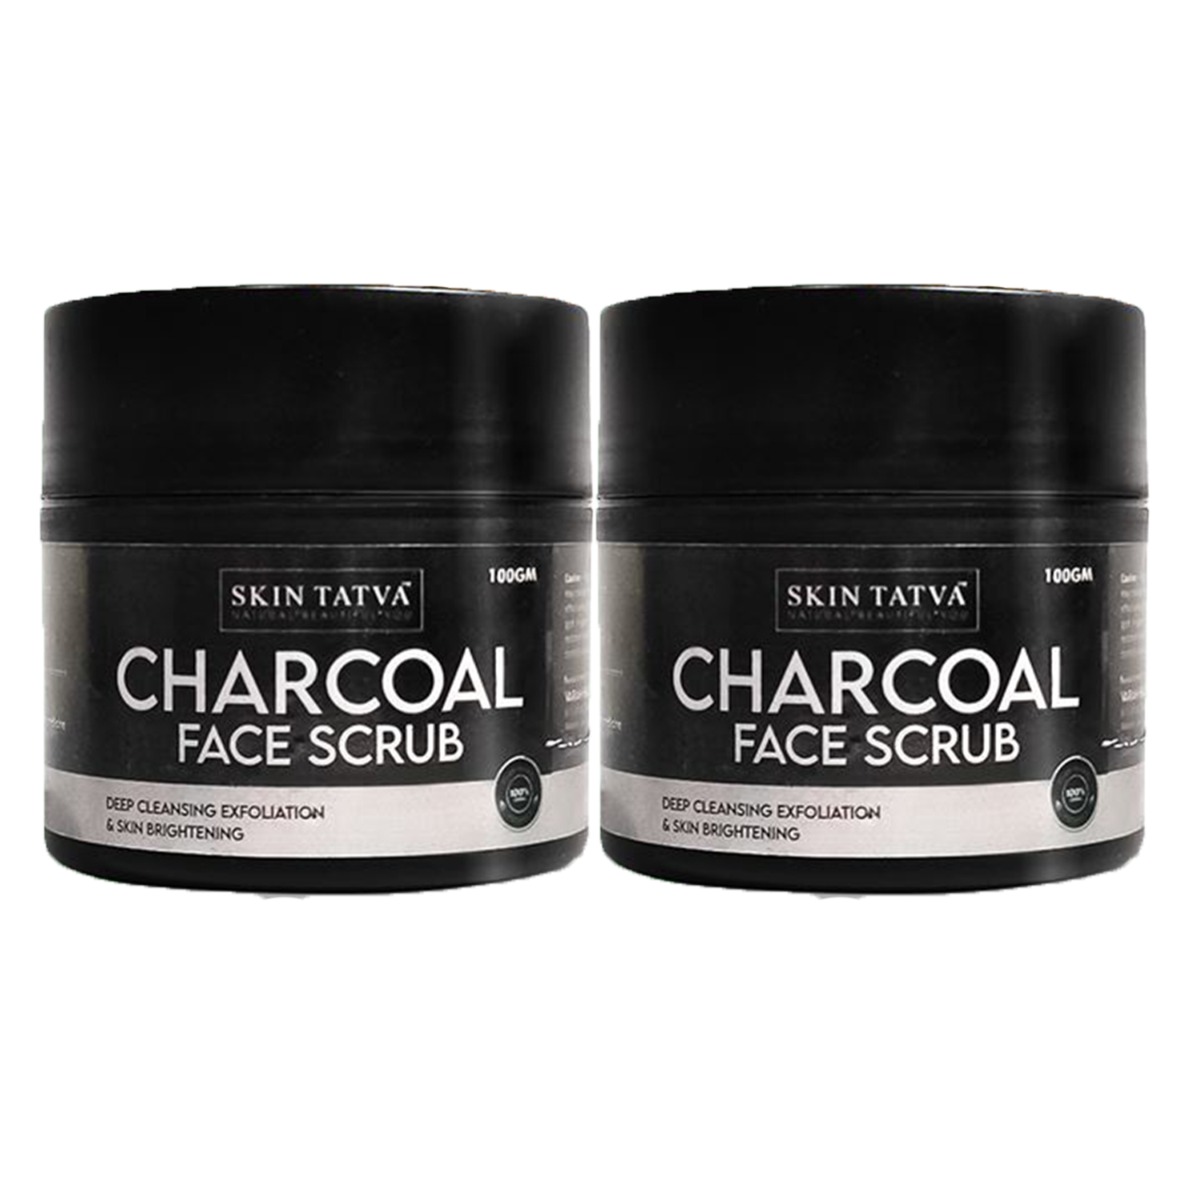 Skin Tatva Charcoal Face Scrub - Pack Of 2, 100gm each